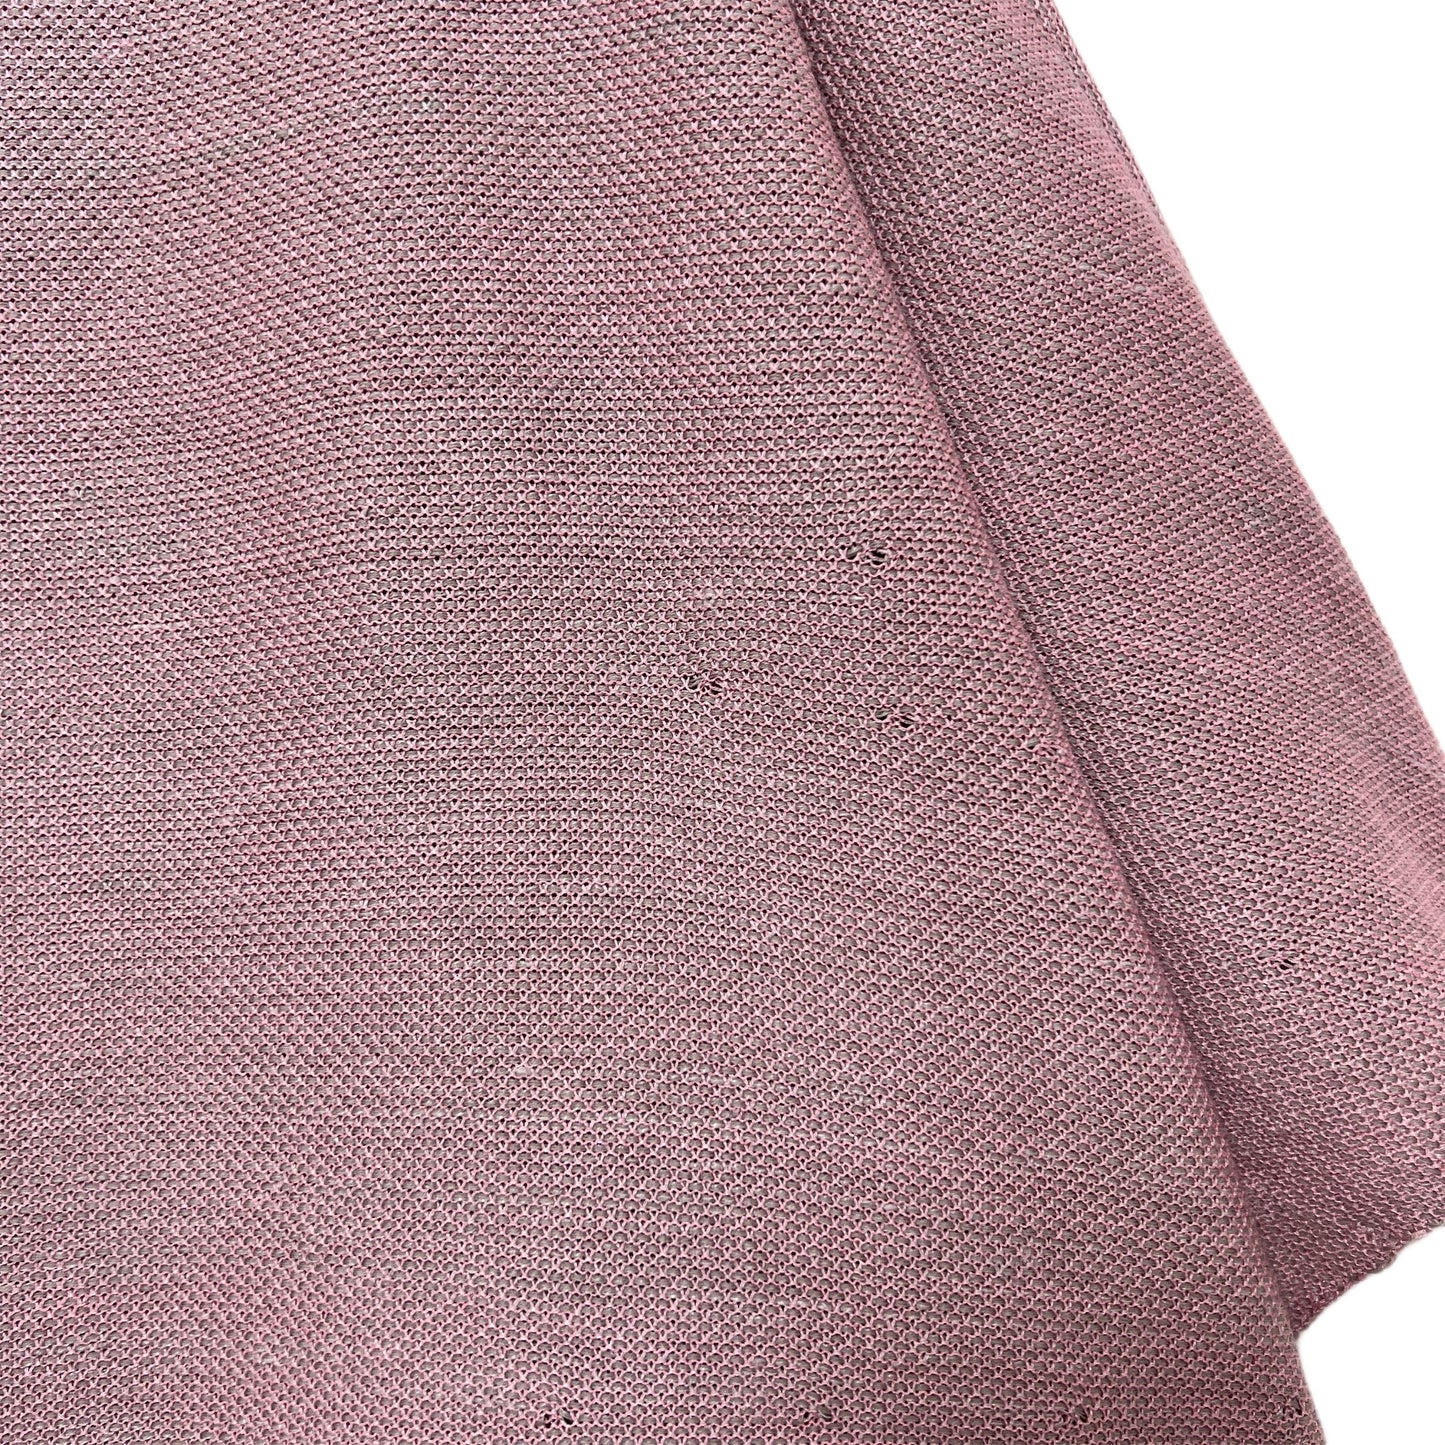 【マルト・デムラン セレクト ファッション】Tシャツピンク